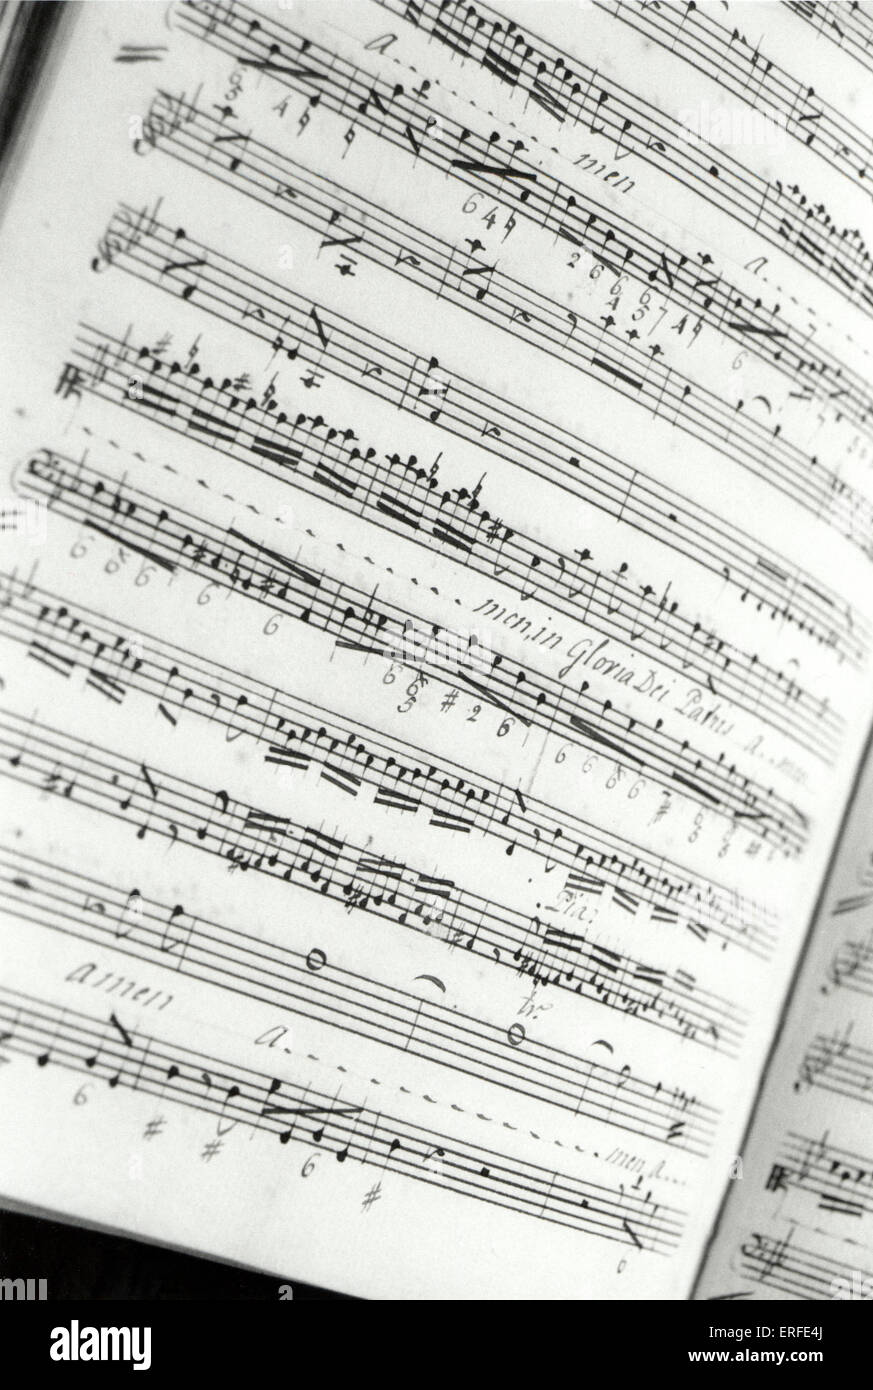 George Frideric Handel "Gloria in excelsis Deo". Estratto dal manoscritto, scoperto nel 2001 alla Royal Academy of Music Foto Stock